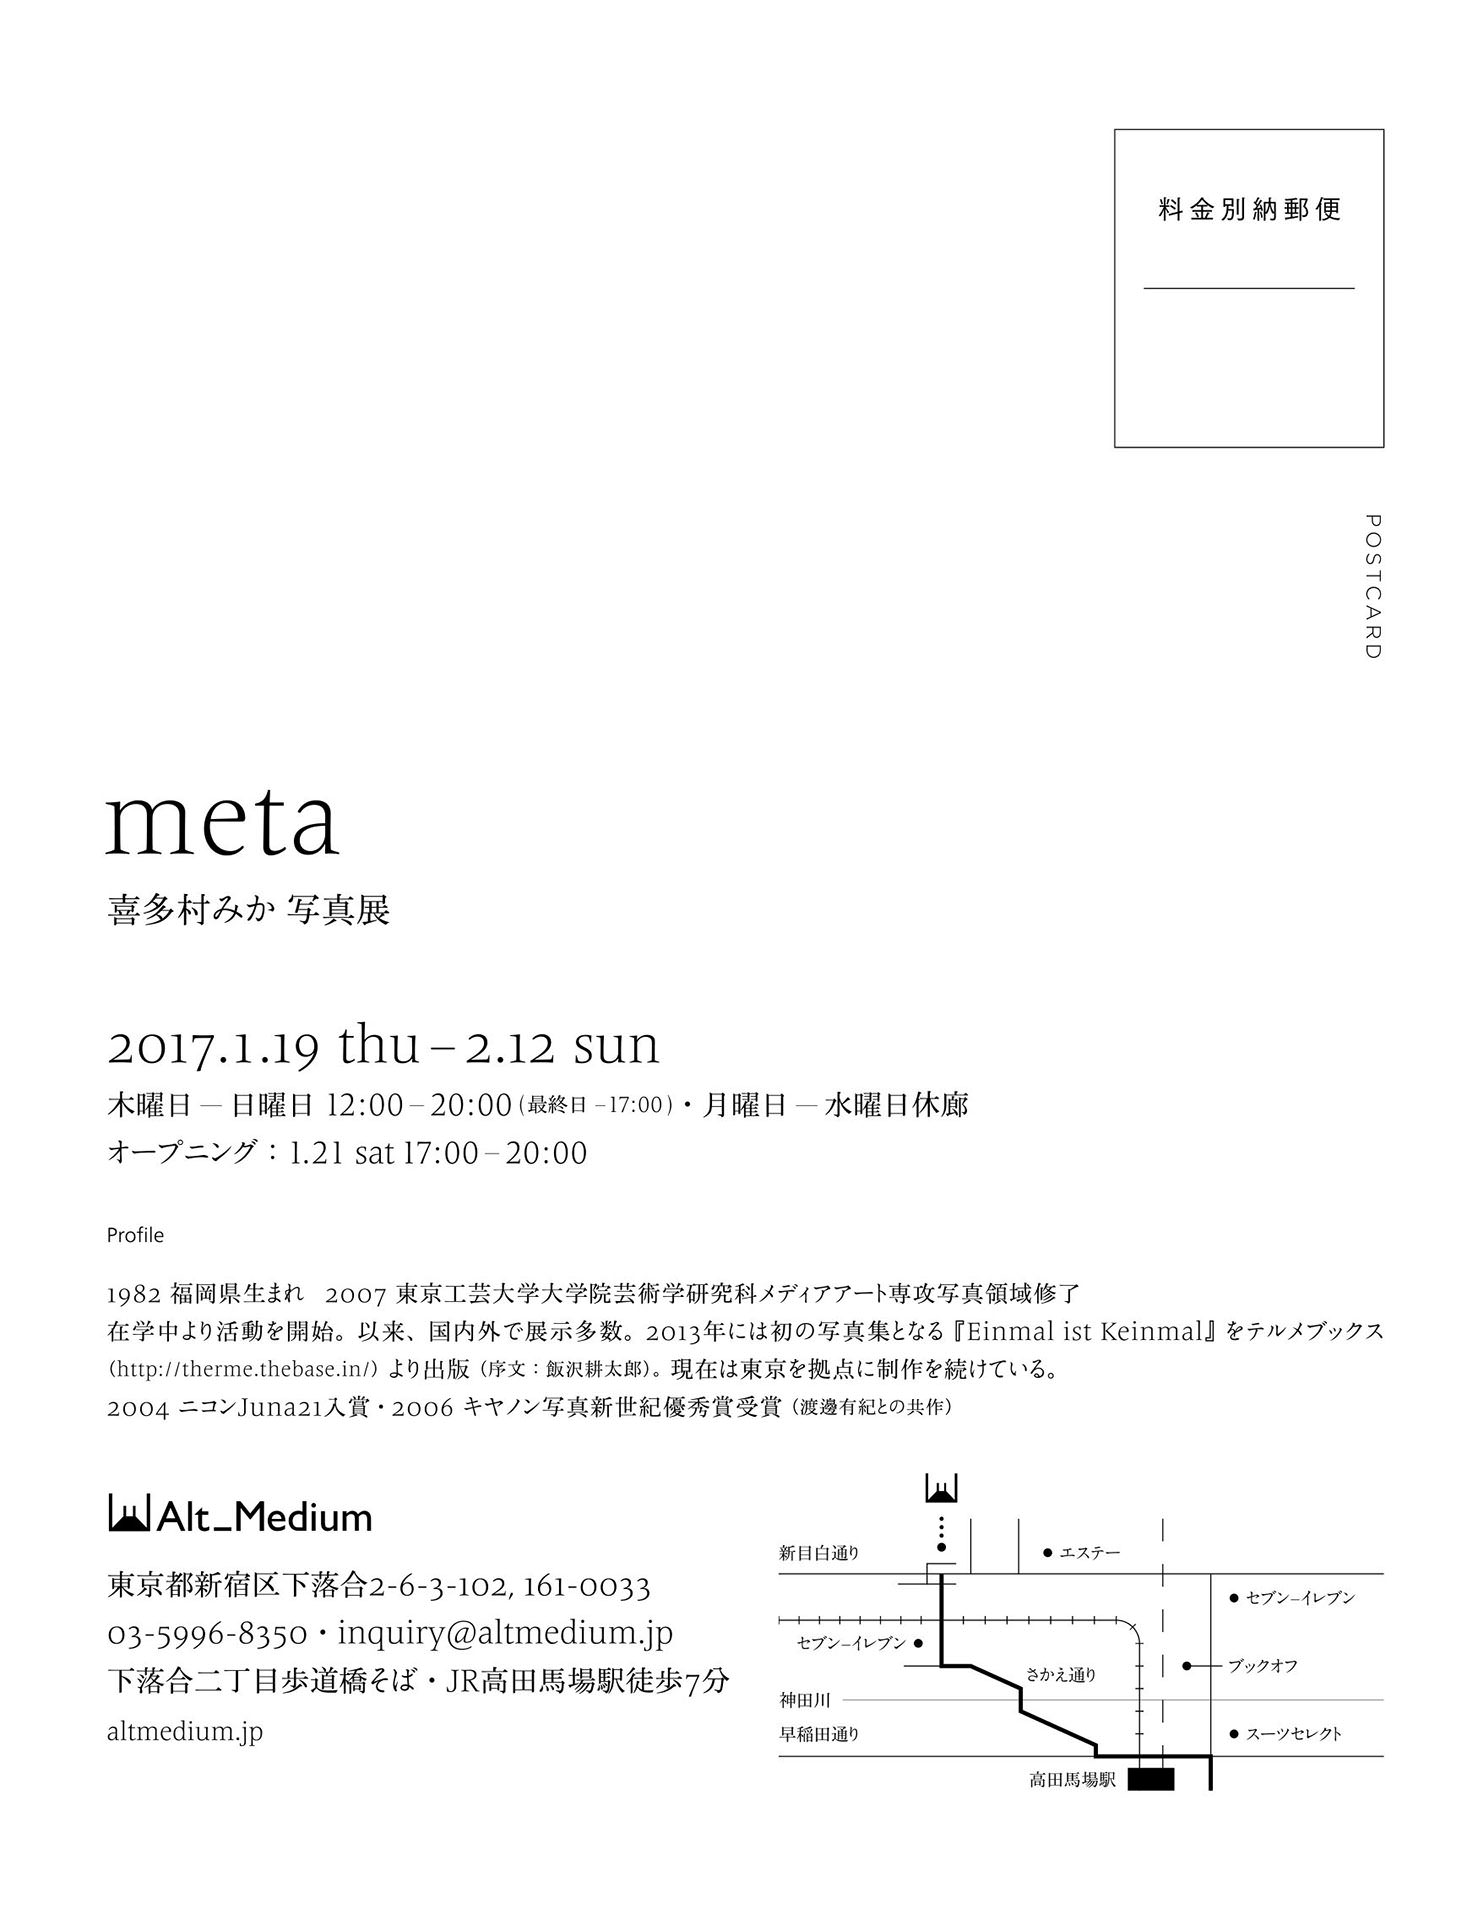 喜多村みか「meta」 Kitamura Mika “meta” - Alt_Medium